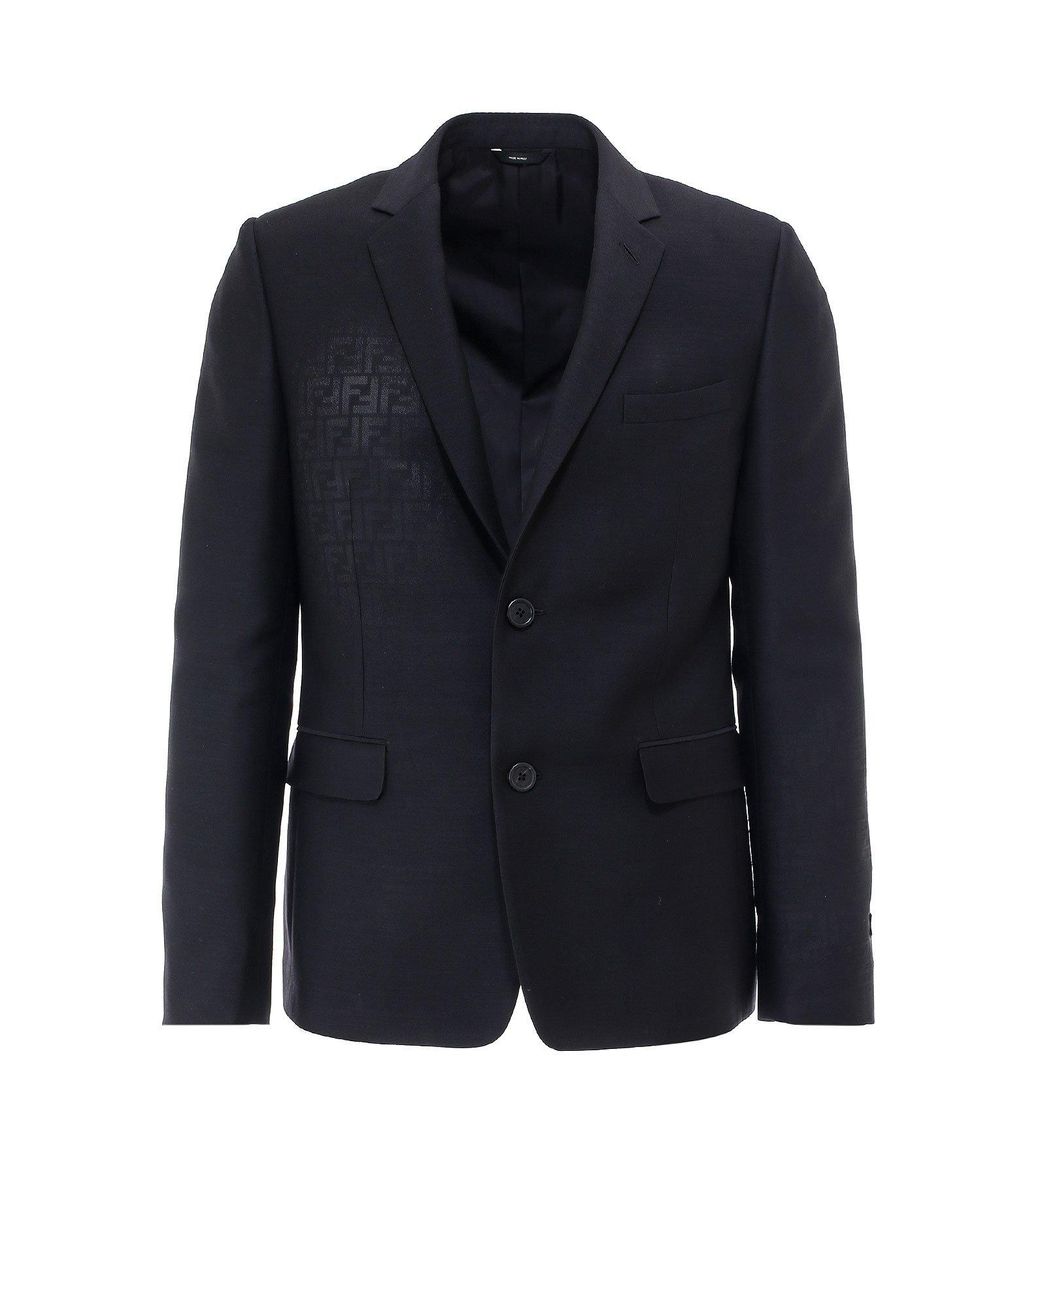 Fendi Wool Ff Motif Blazer in Black for Men - Lyst